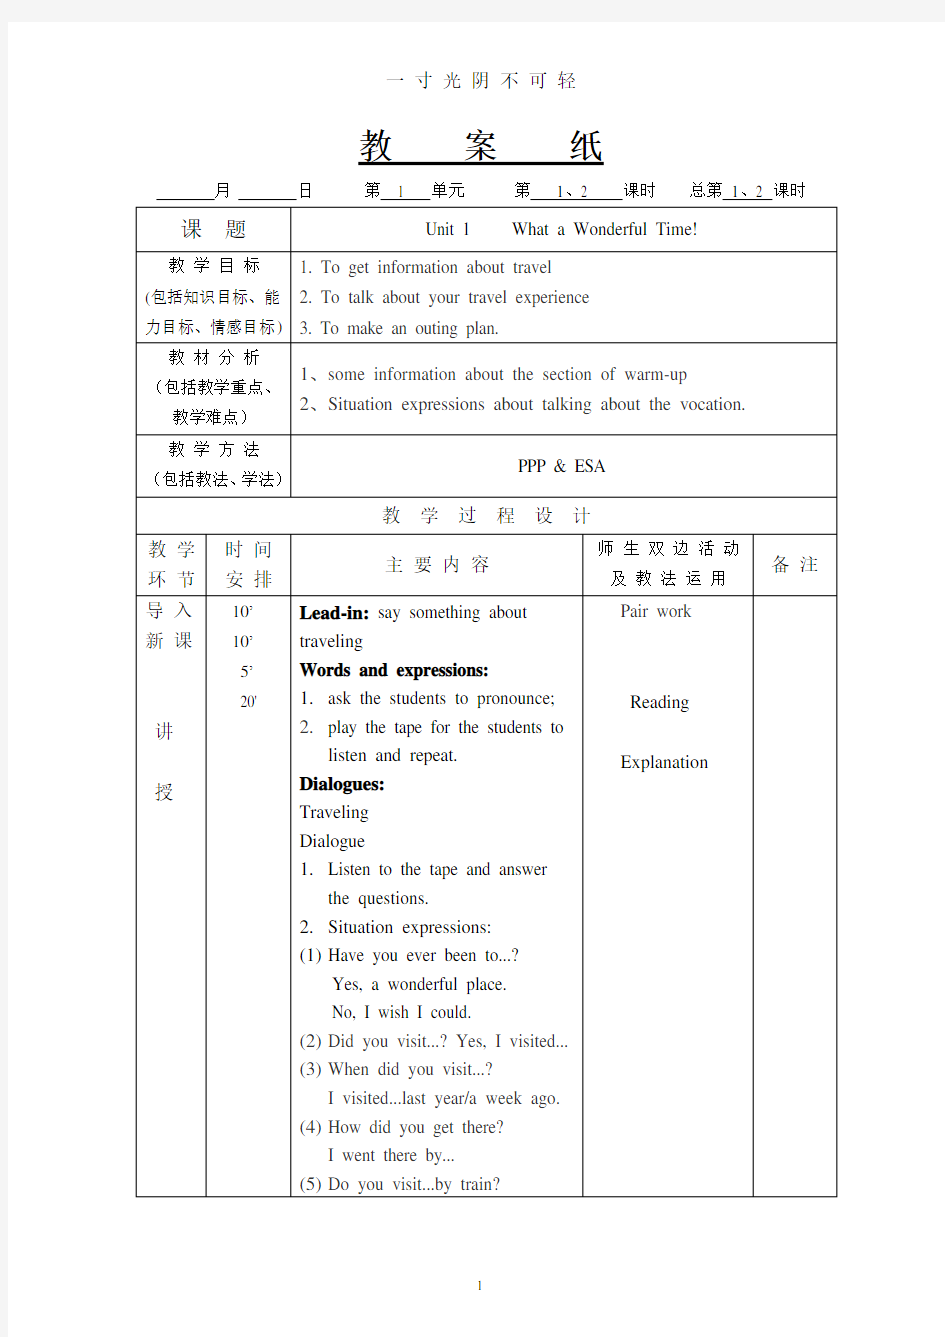 中职基础模块英语第二册教案.pdf